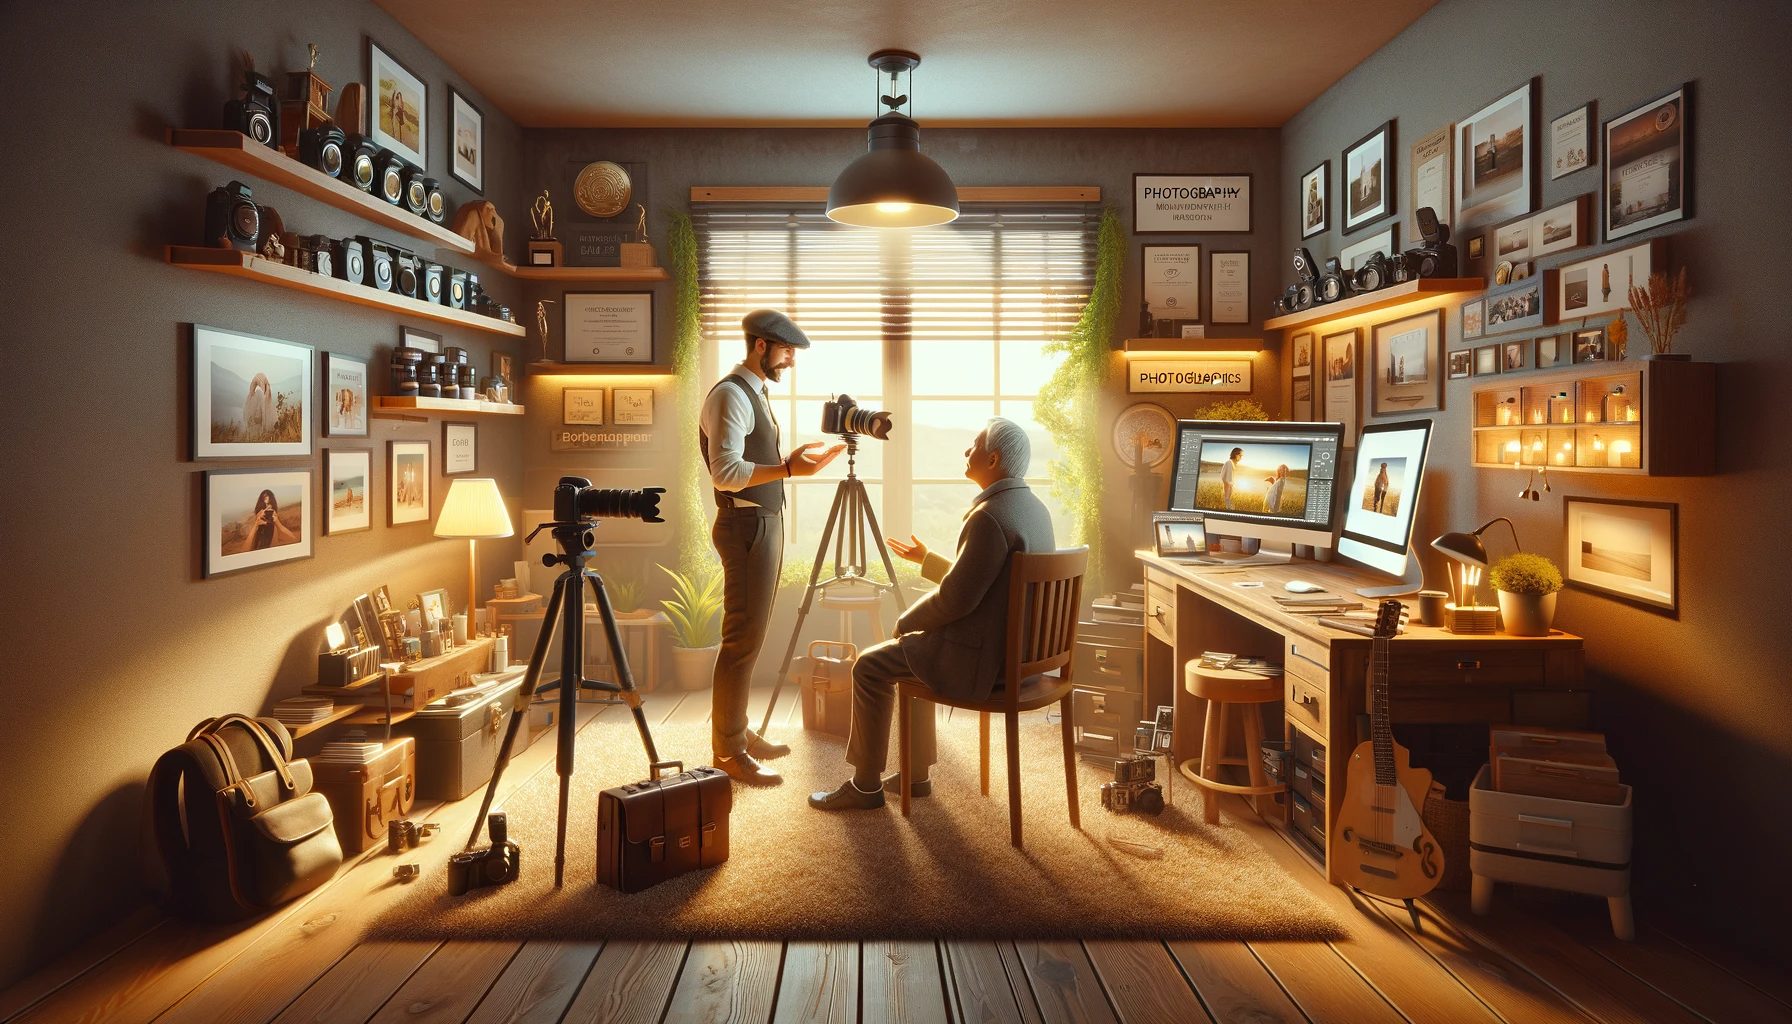 Photographe dans un studio confortable de style vintage avec équipement photographique.